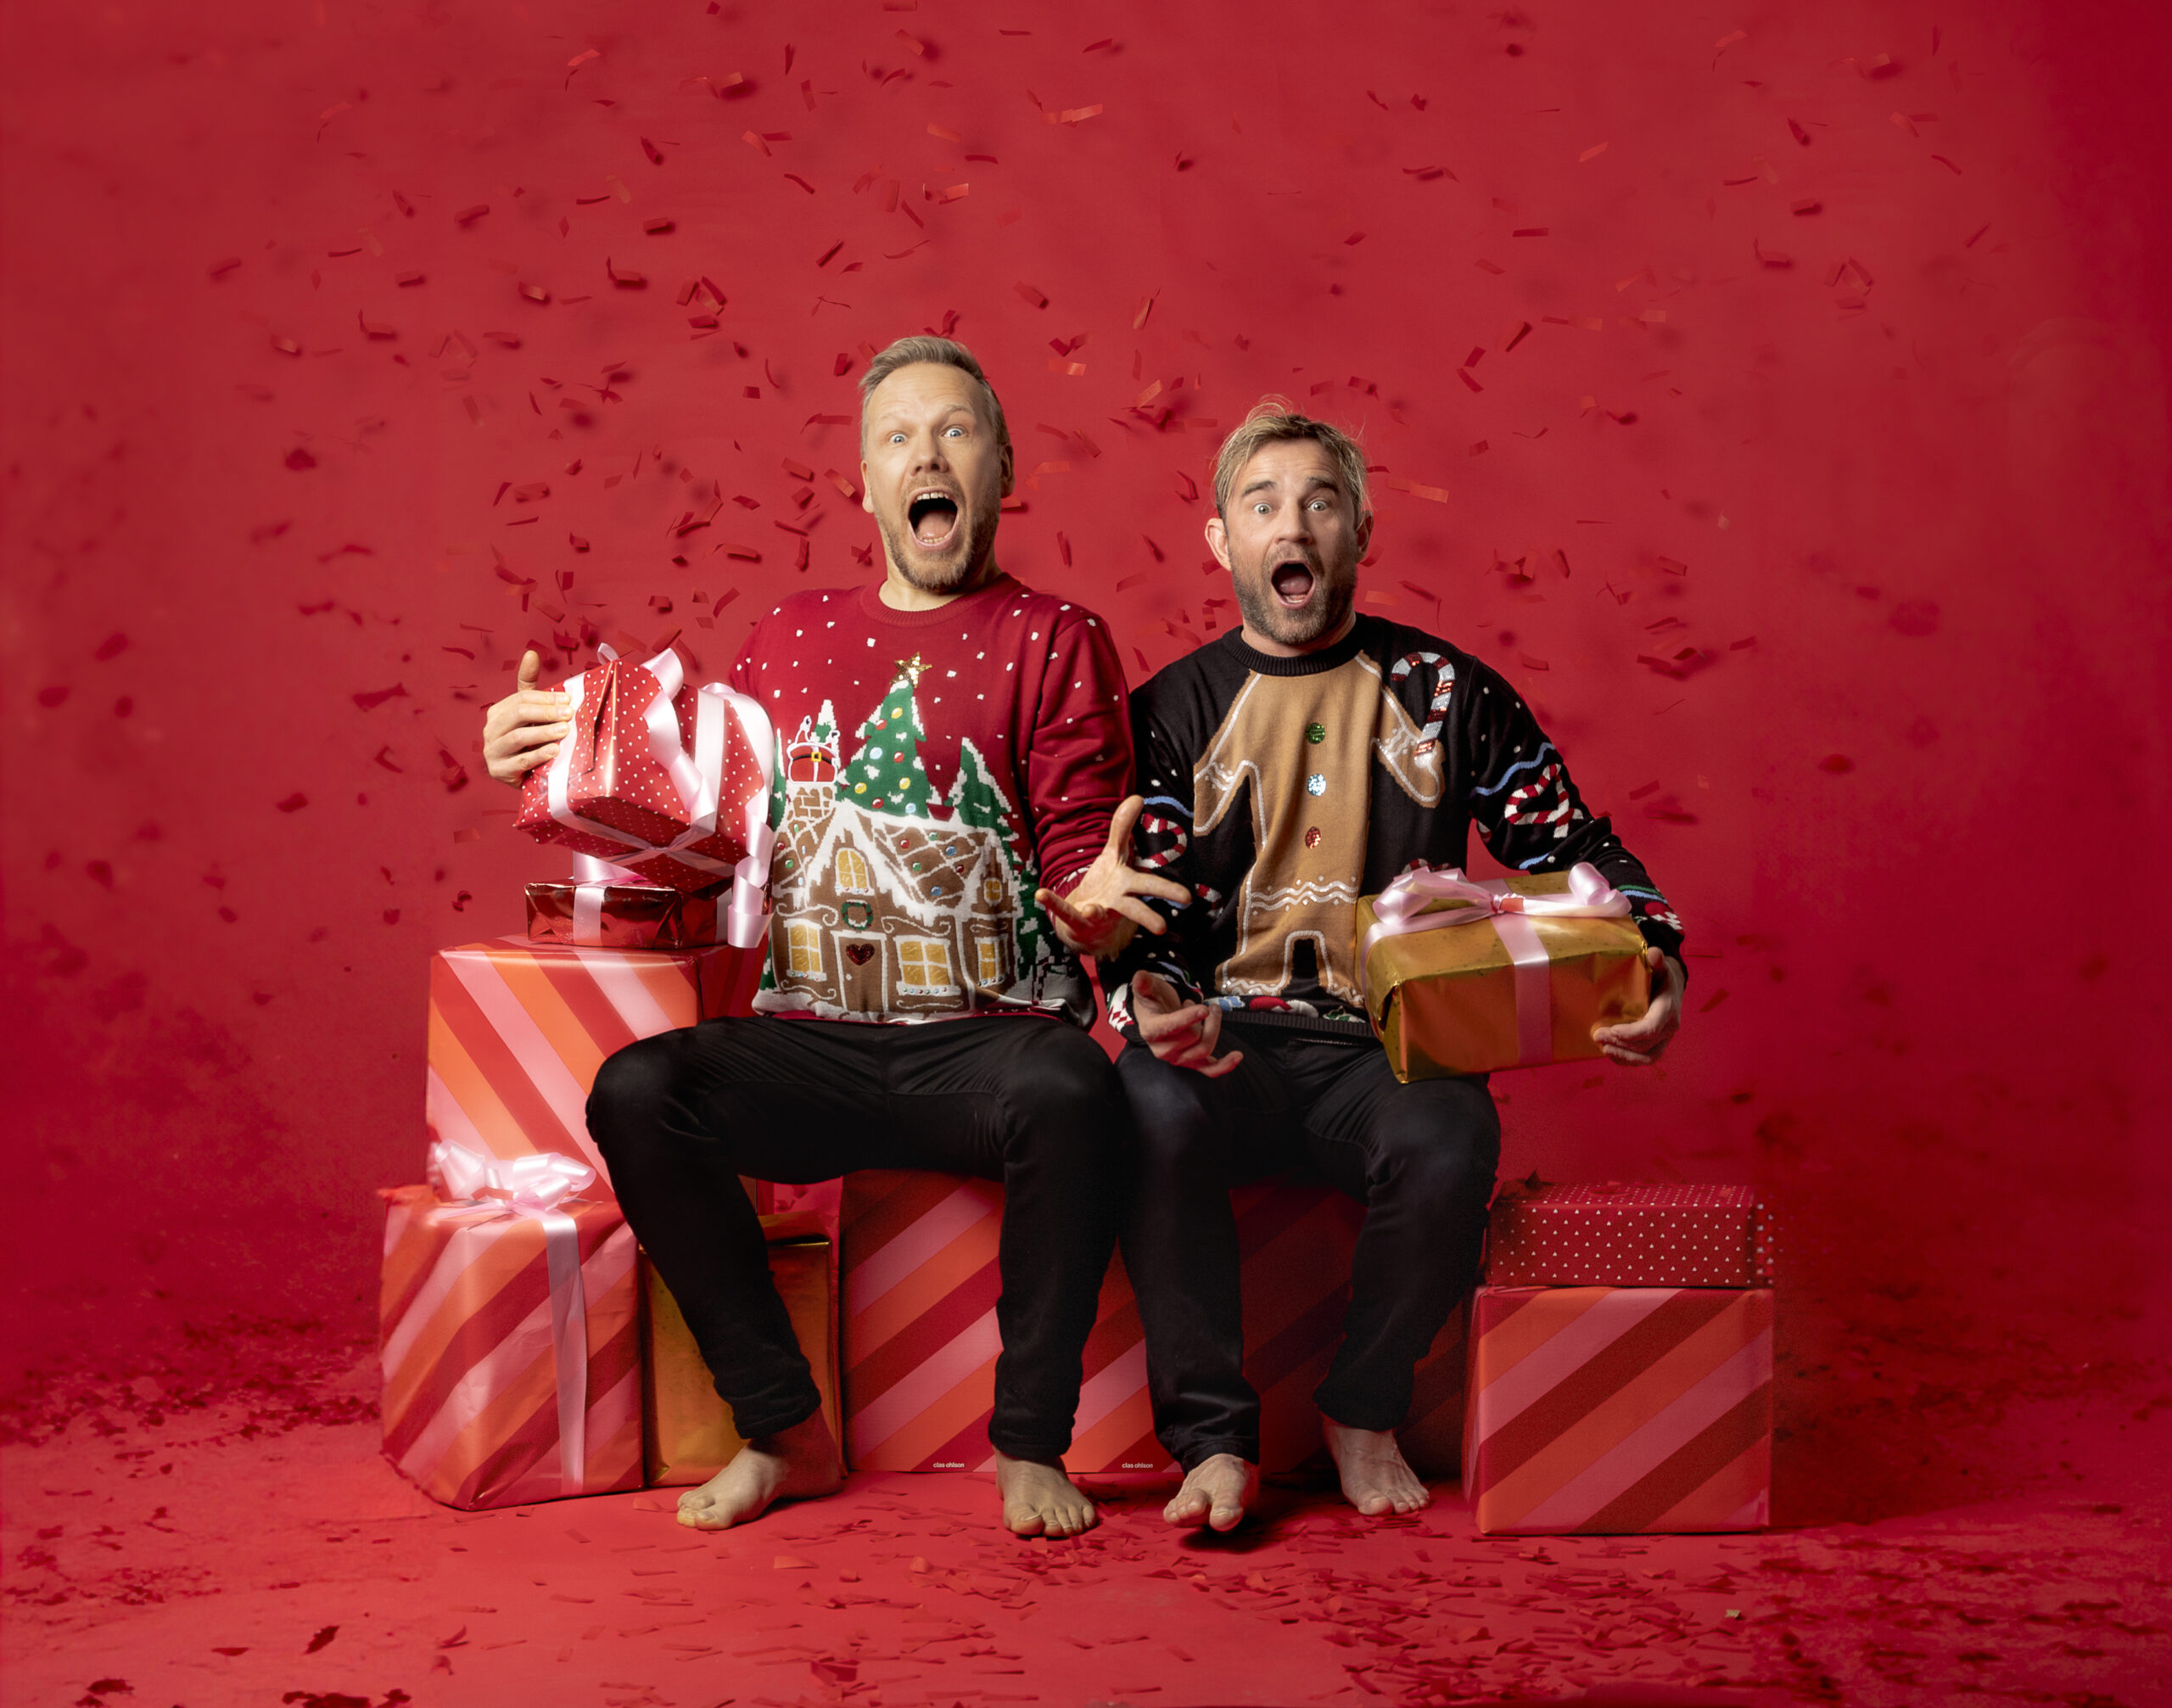 Kaksi joulupaitaista mieshahmoa istuvat lahjapakettien päällä ja ilmeilevät